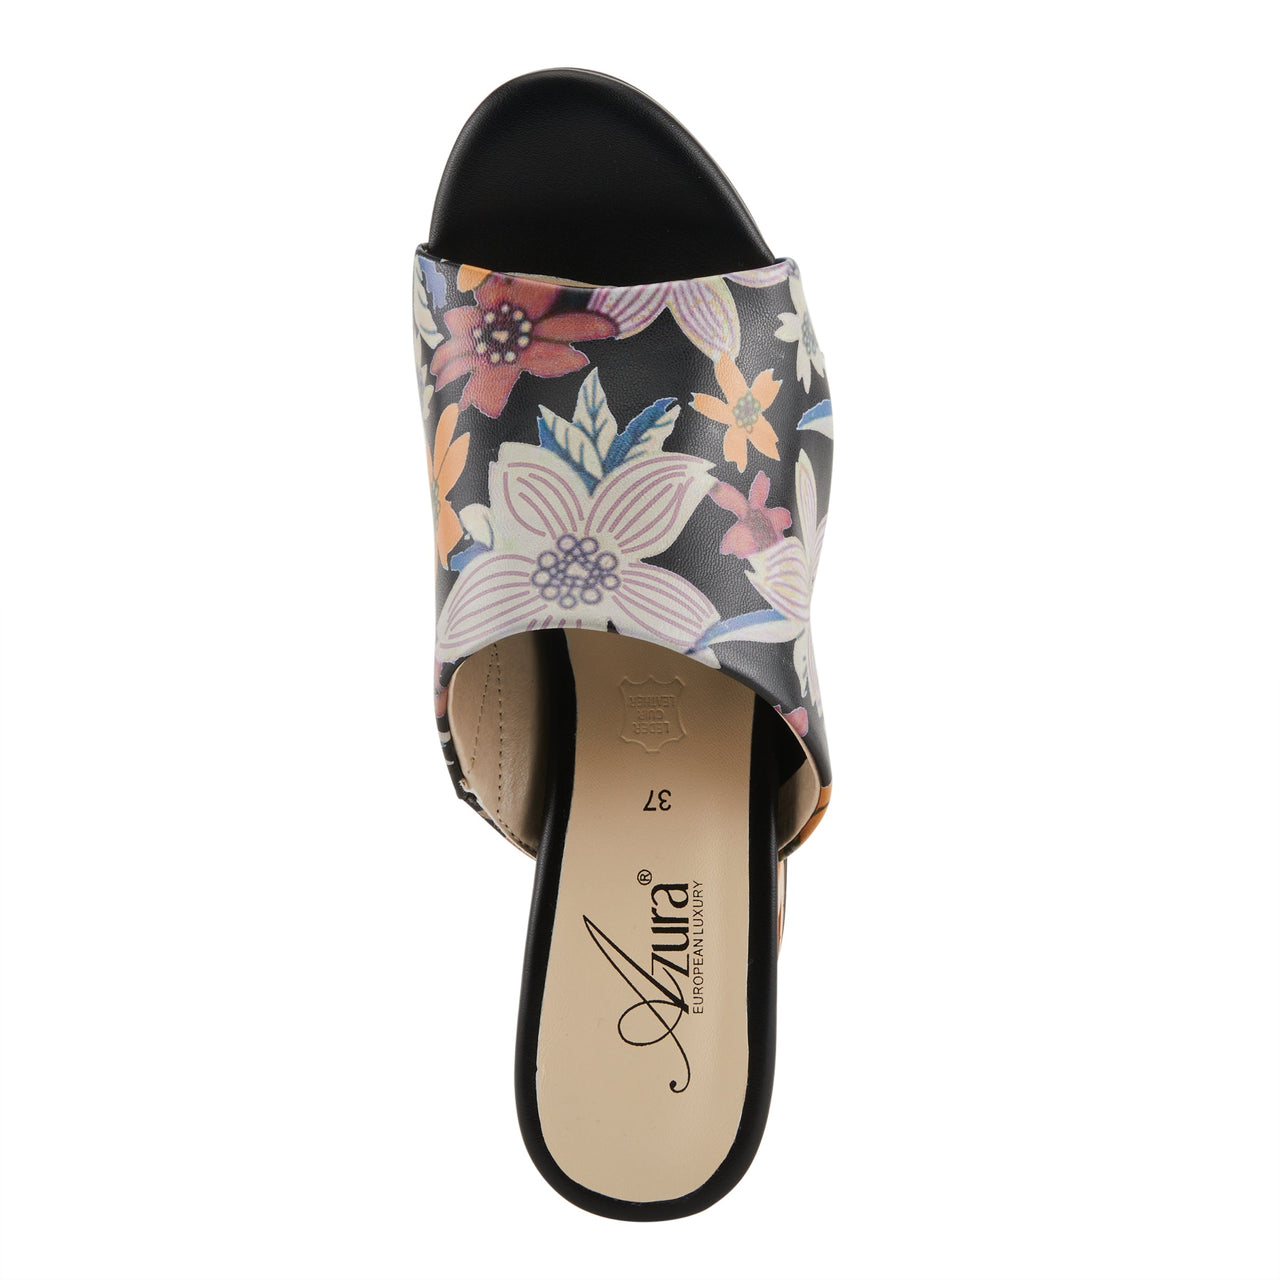  Spring Step Shoes Azura Sculptor Sandals with Laser-cut Floral Details